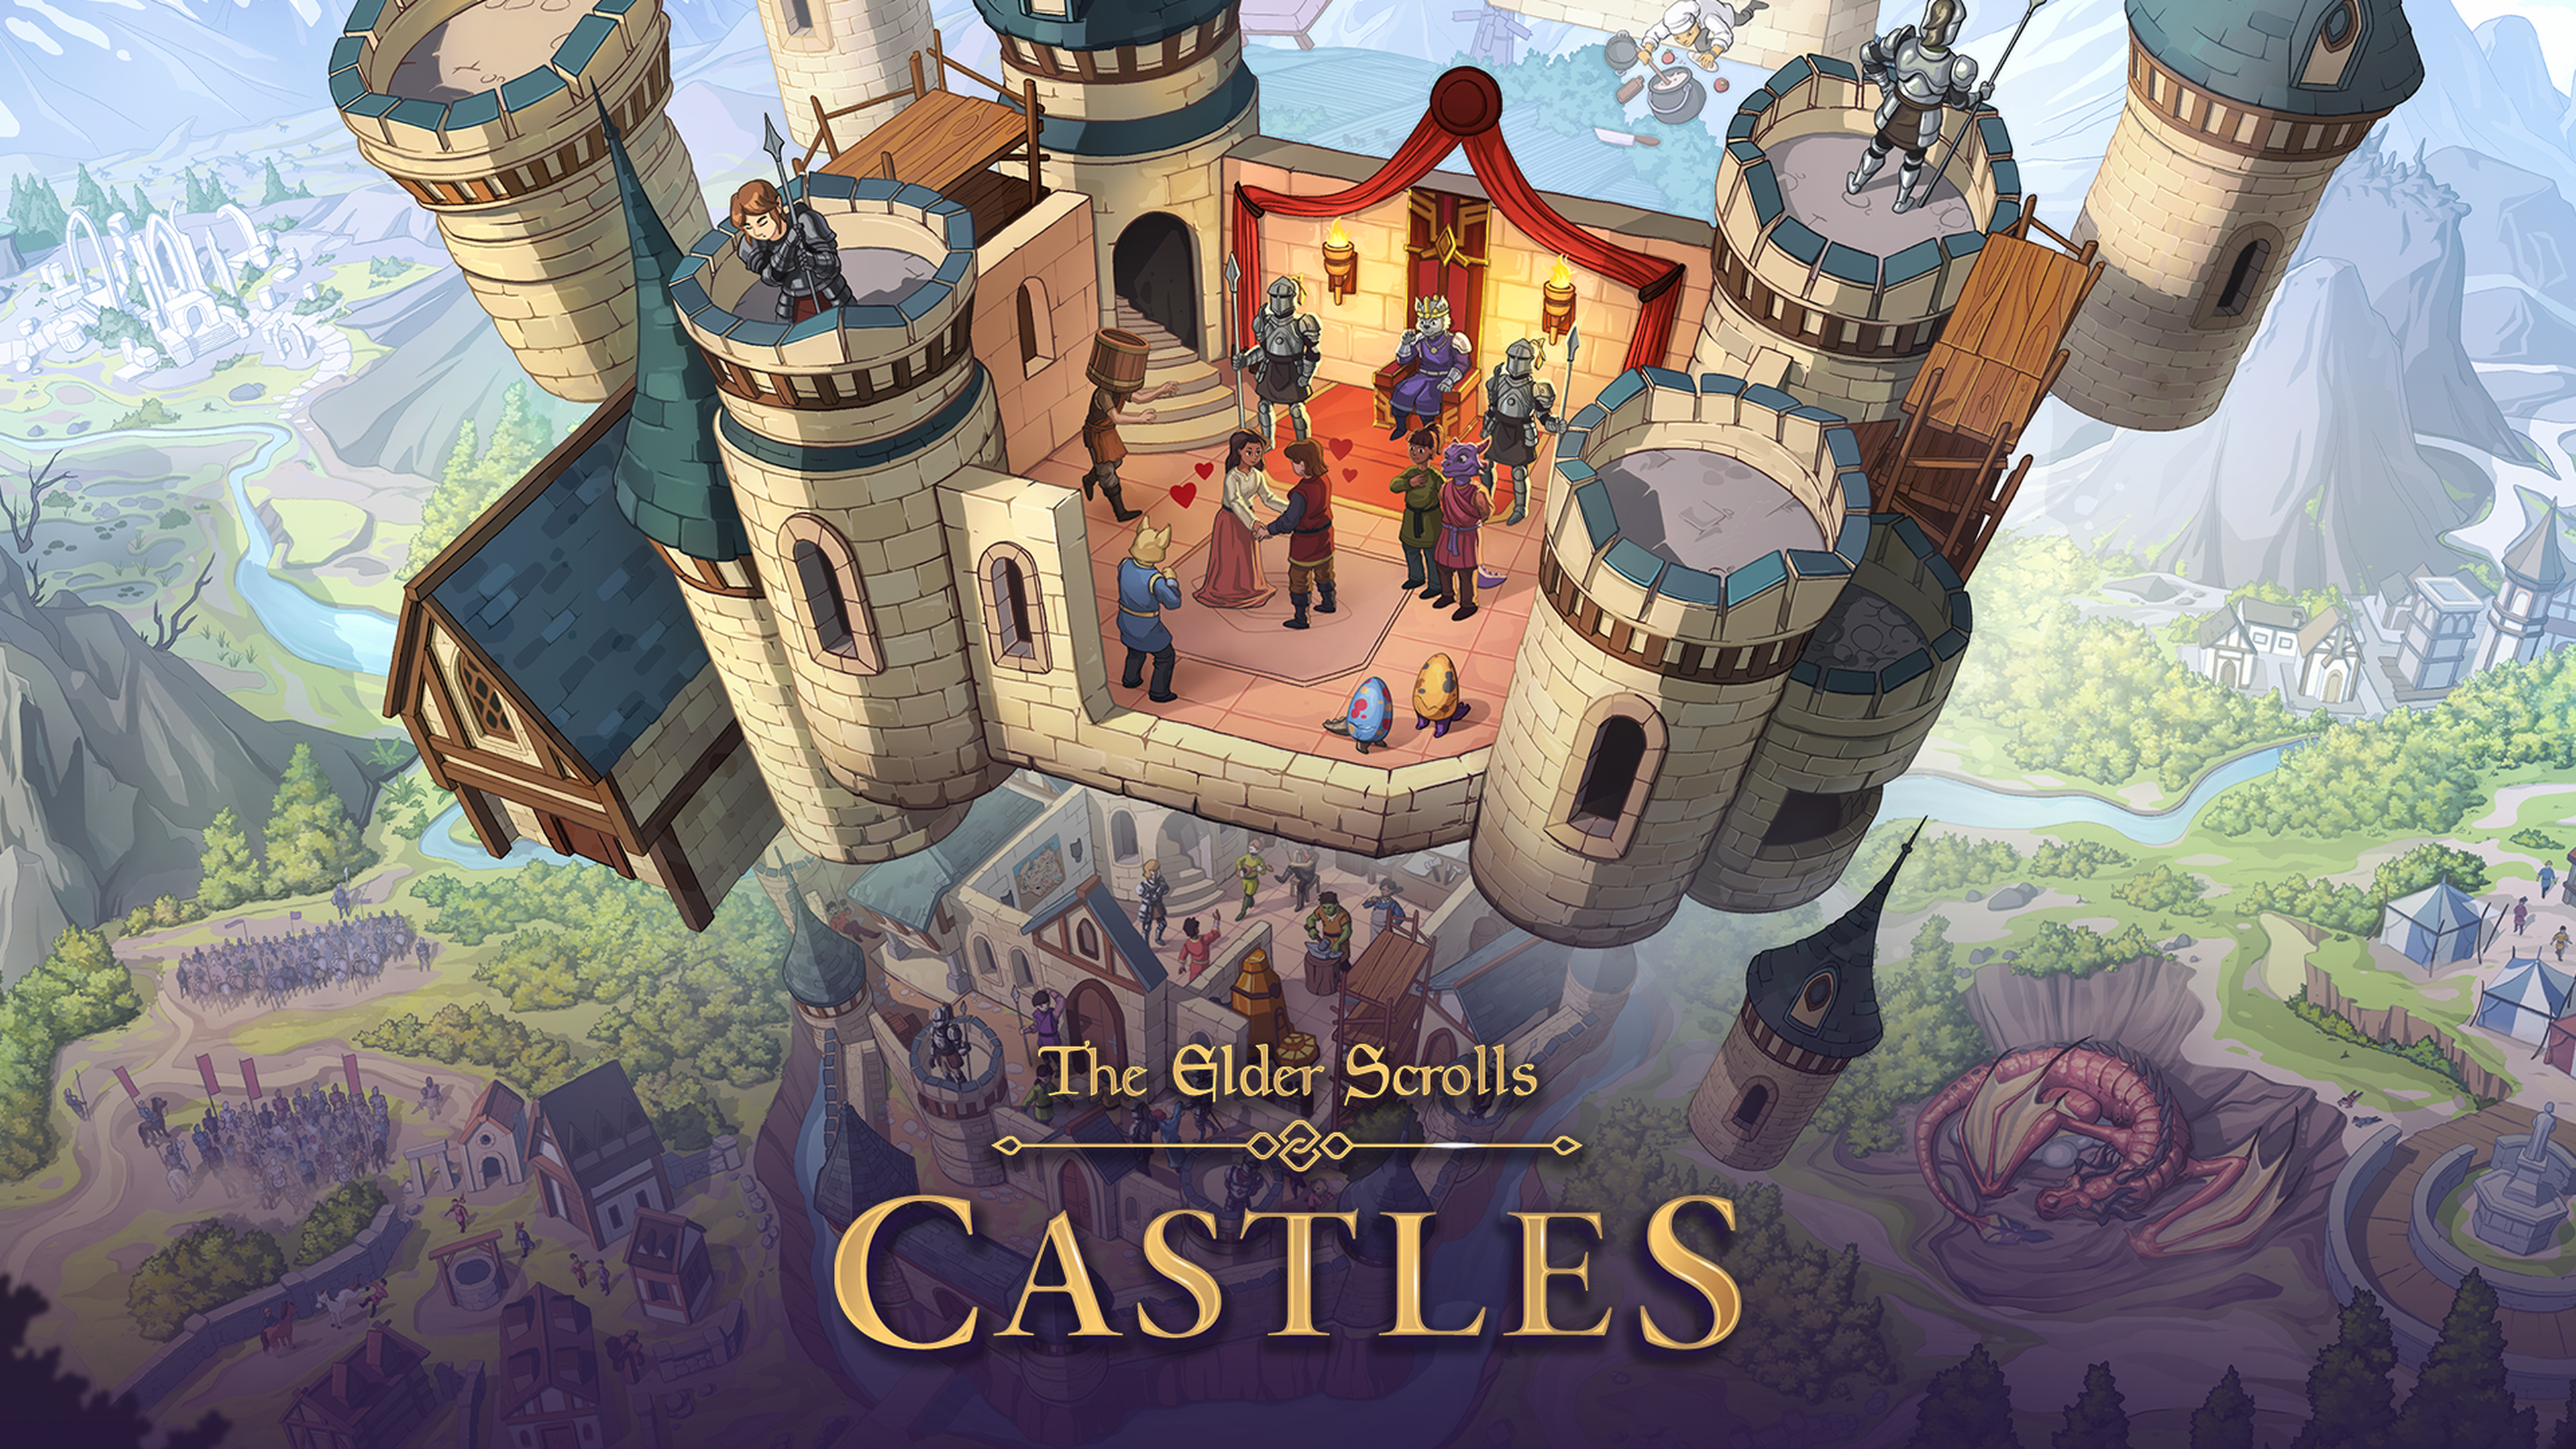 The Elder Scrolls Castle